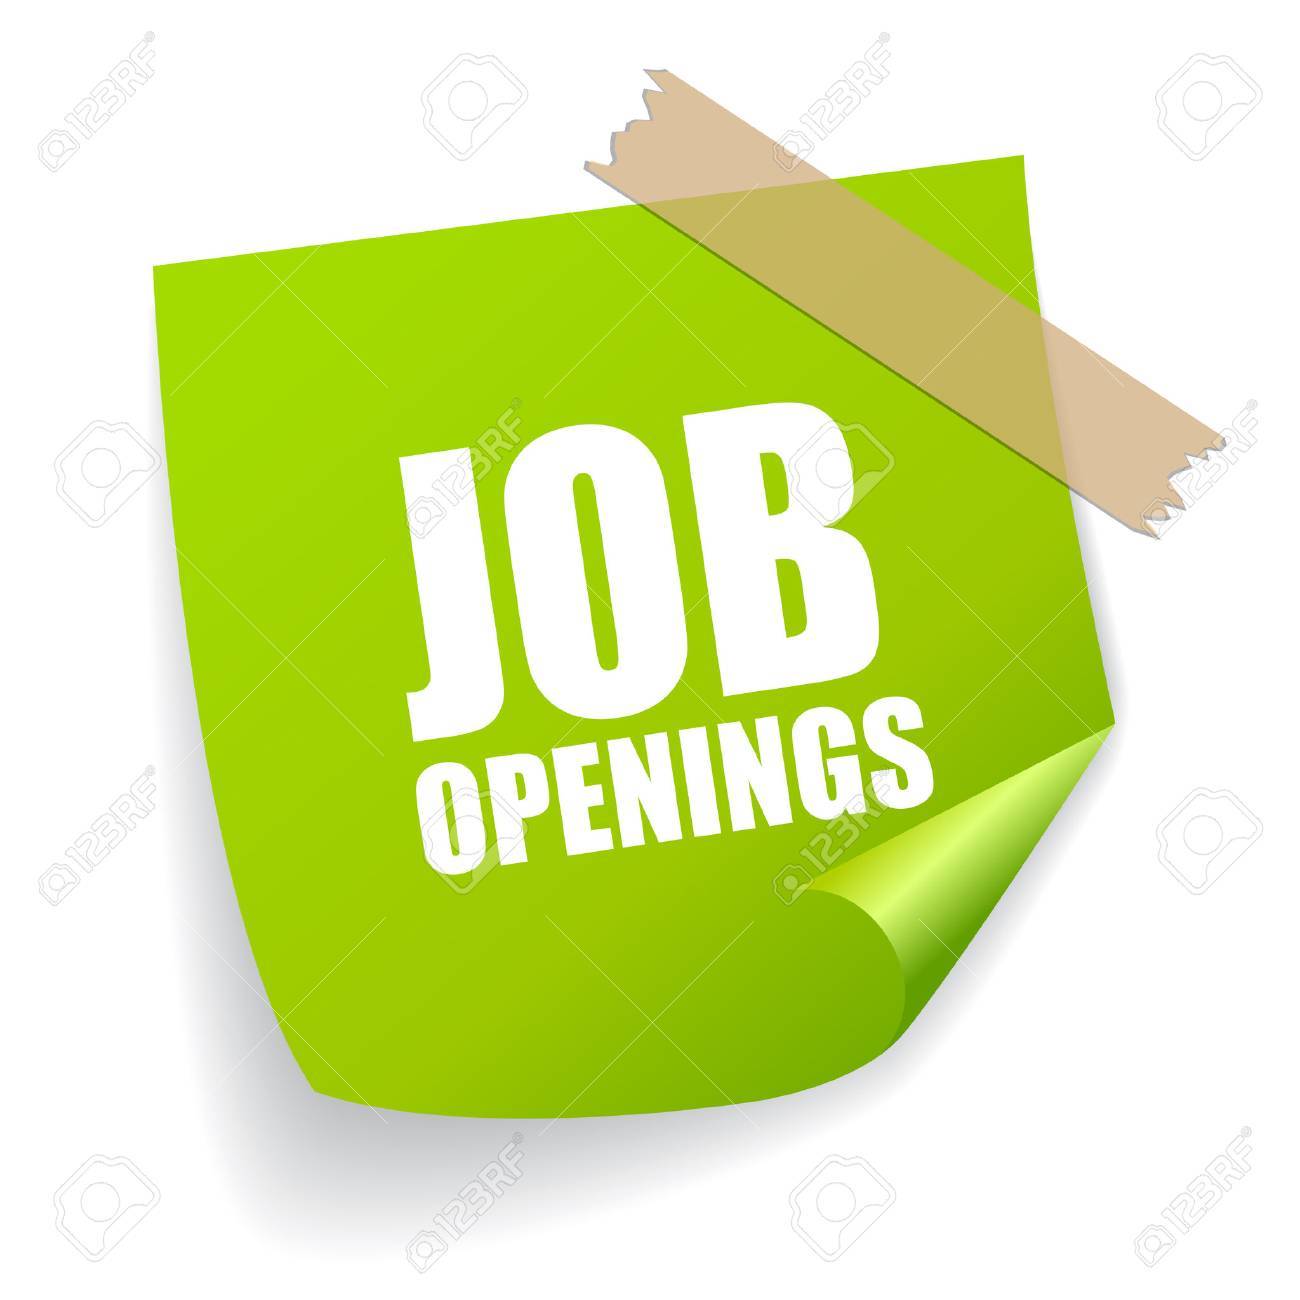 Job Openings / Job Openings